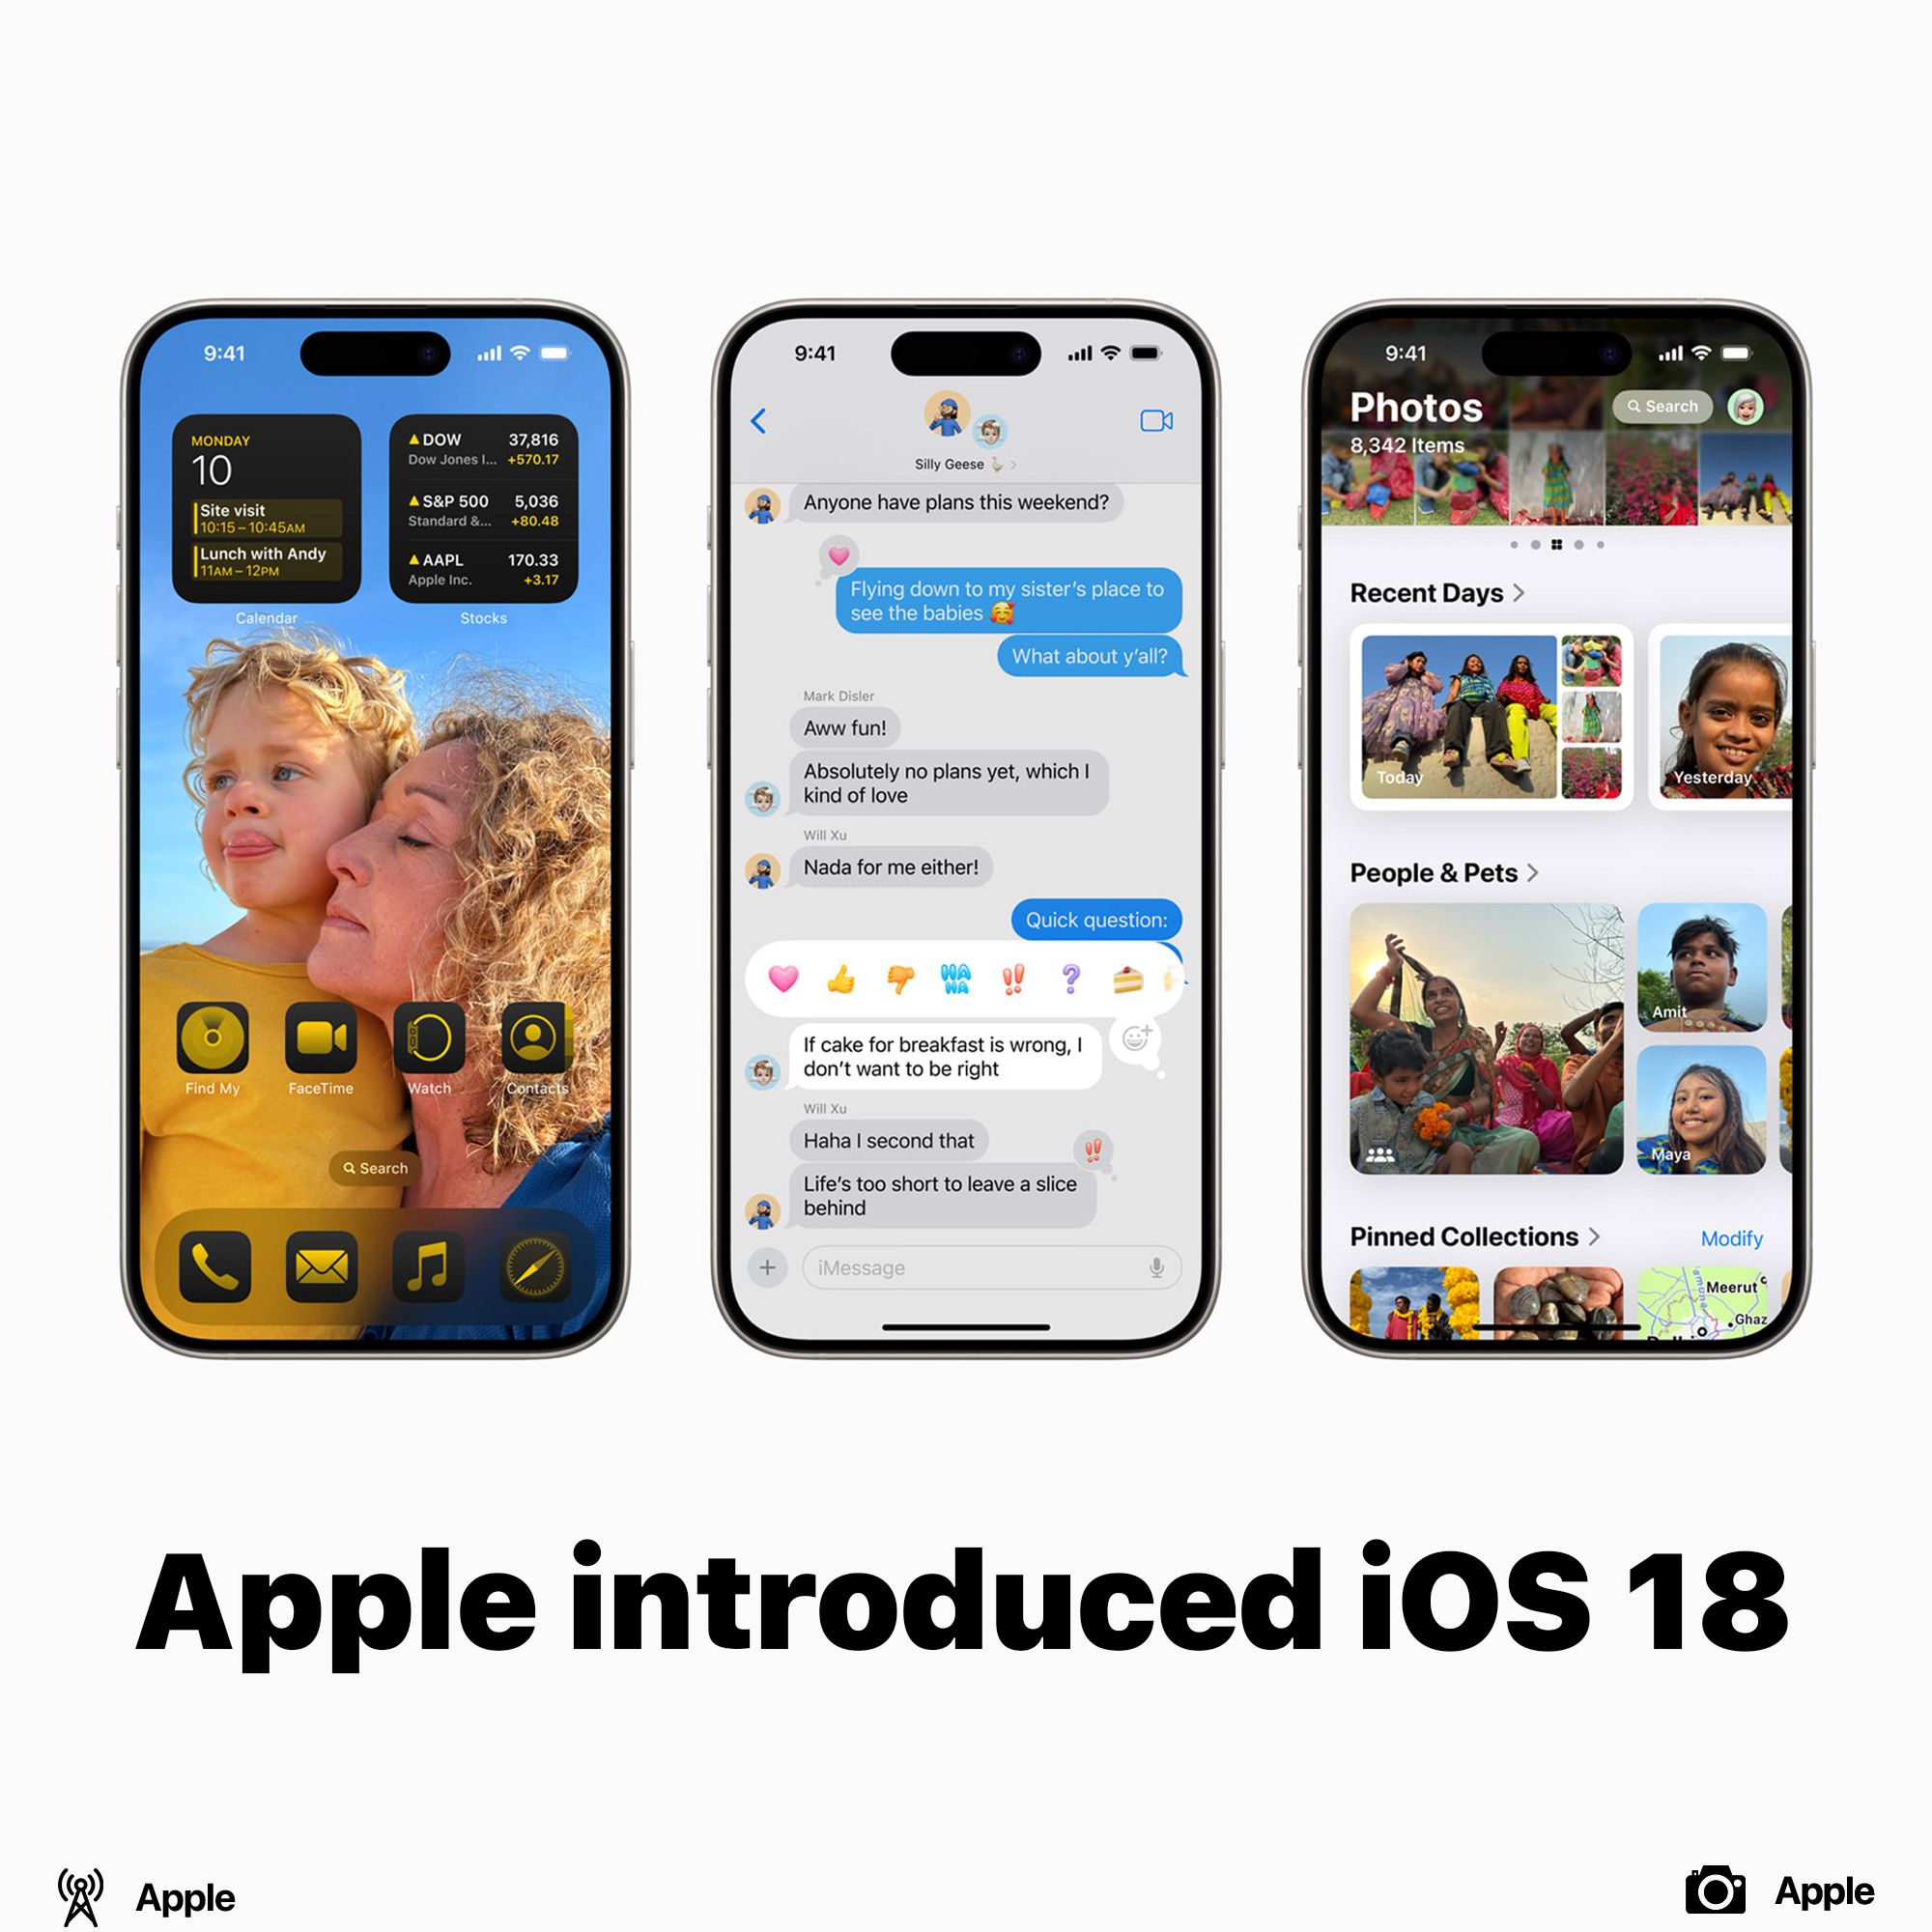 Apple introduced iOS 18